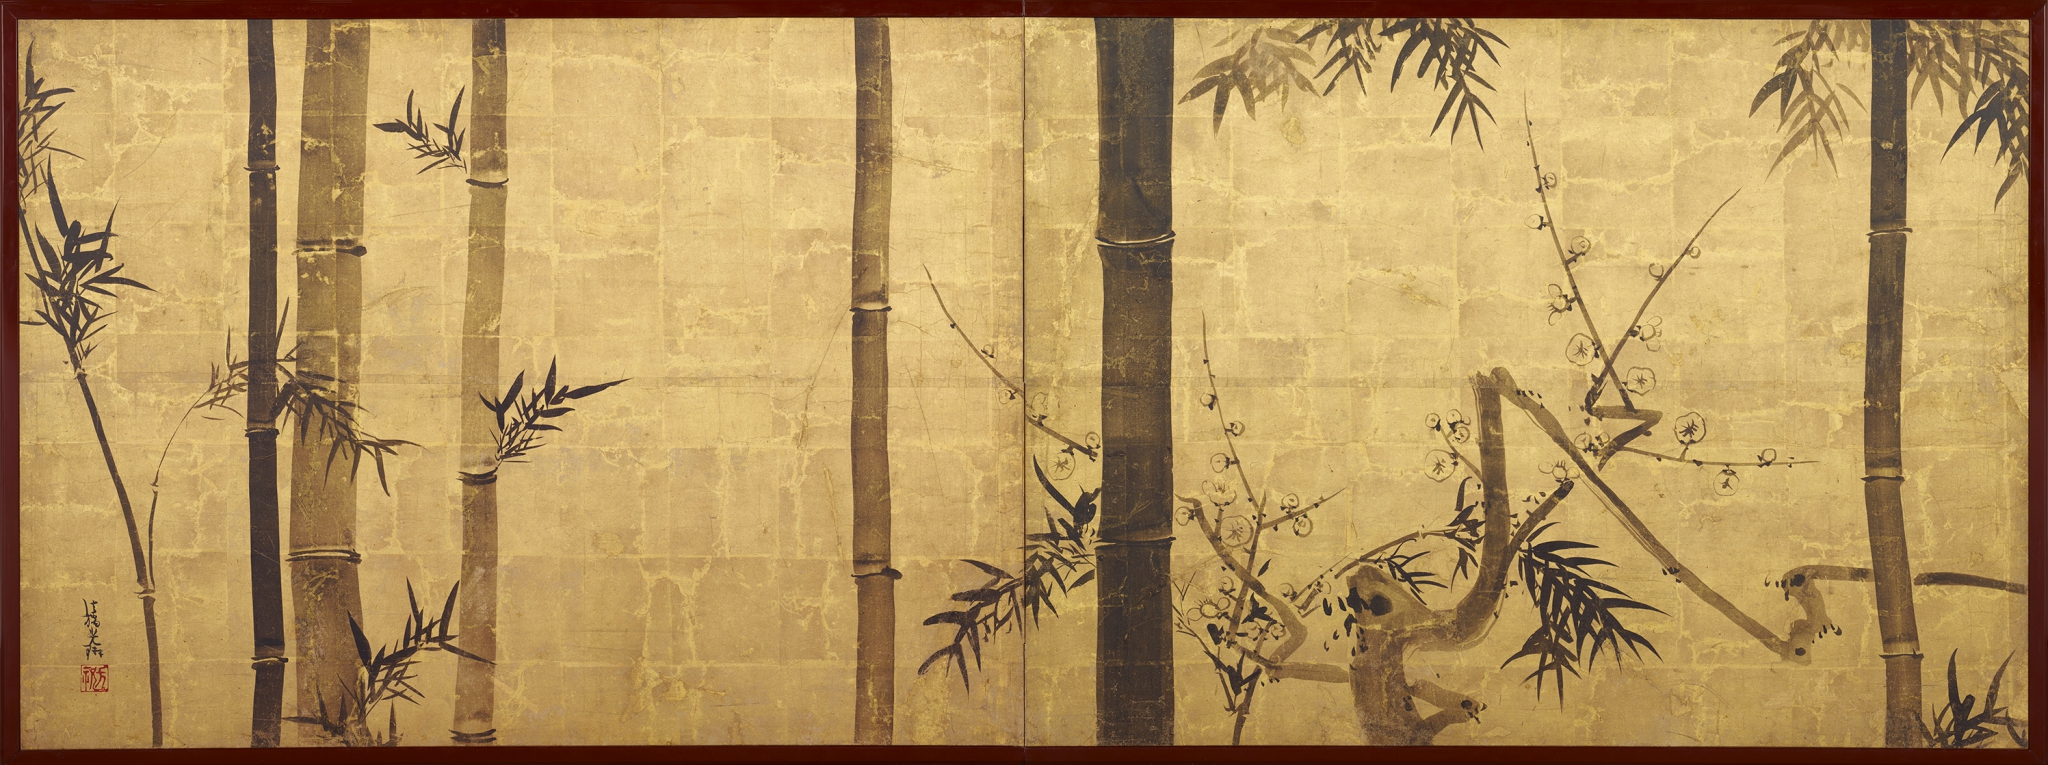 Китайский пейзаж с бамбуком